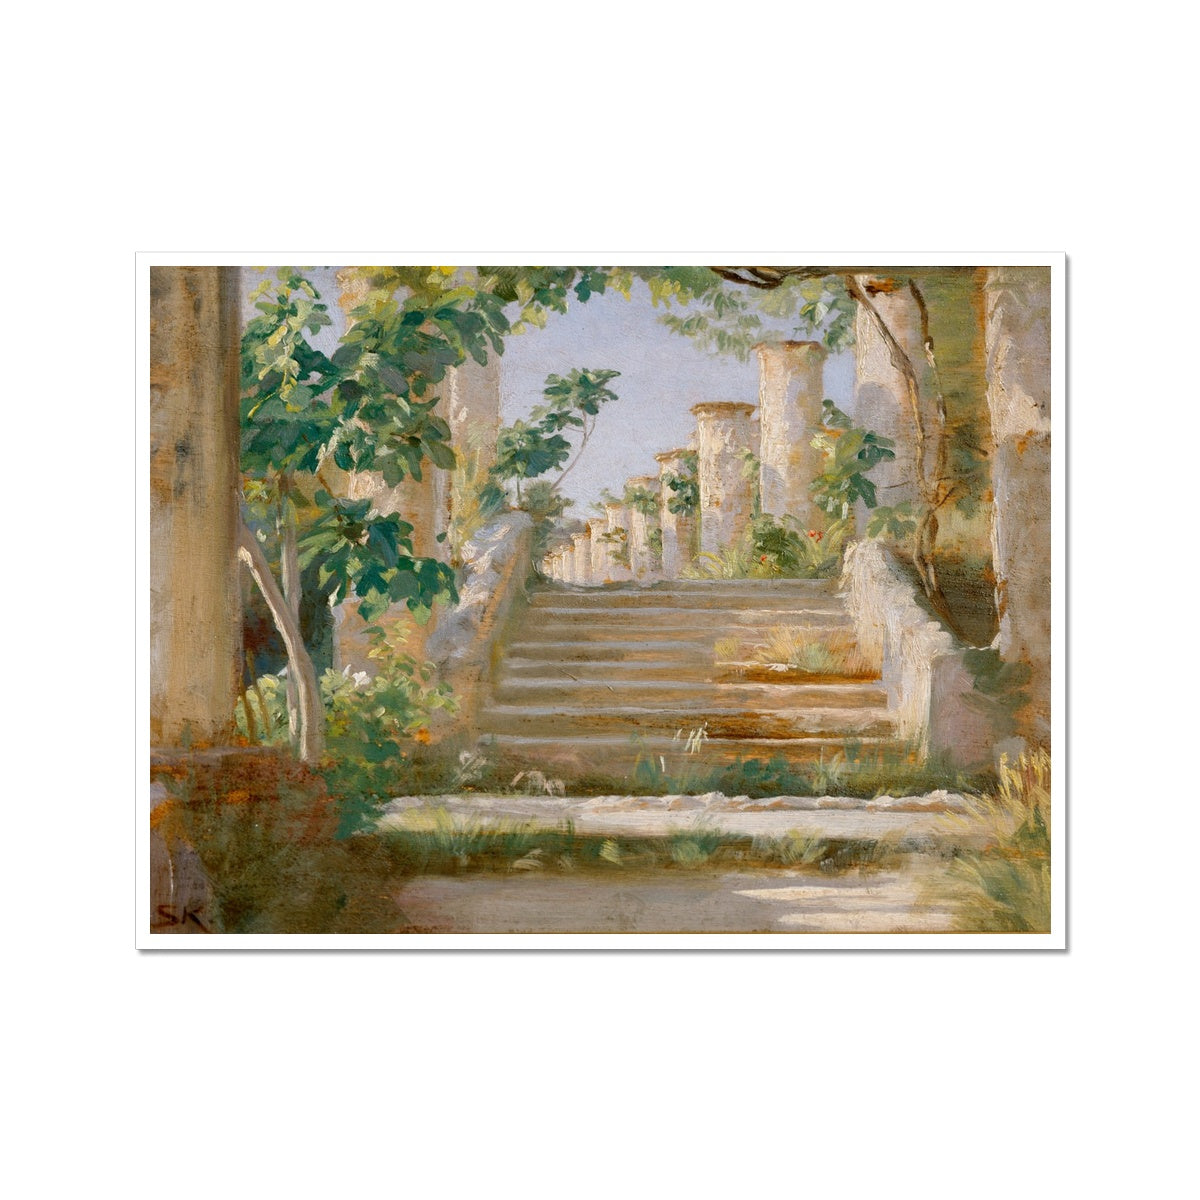 Loggia in Fine Severin – | Buy Krøyer Peder Online Peaceful Artworks Prints by Art Ravello